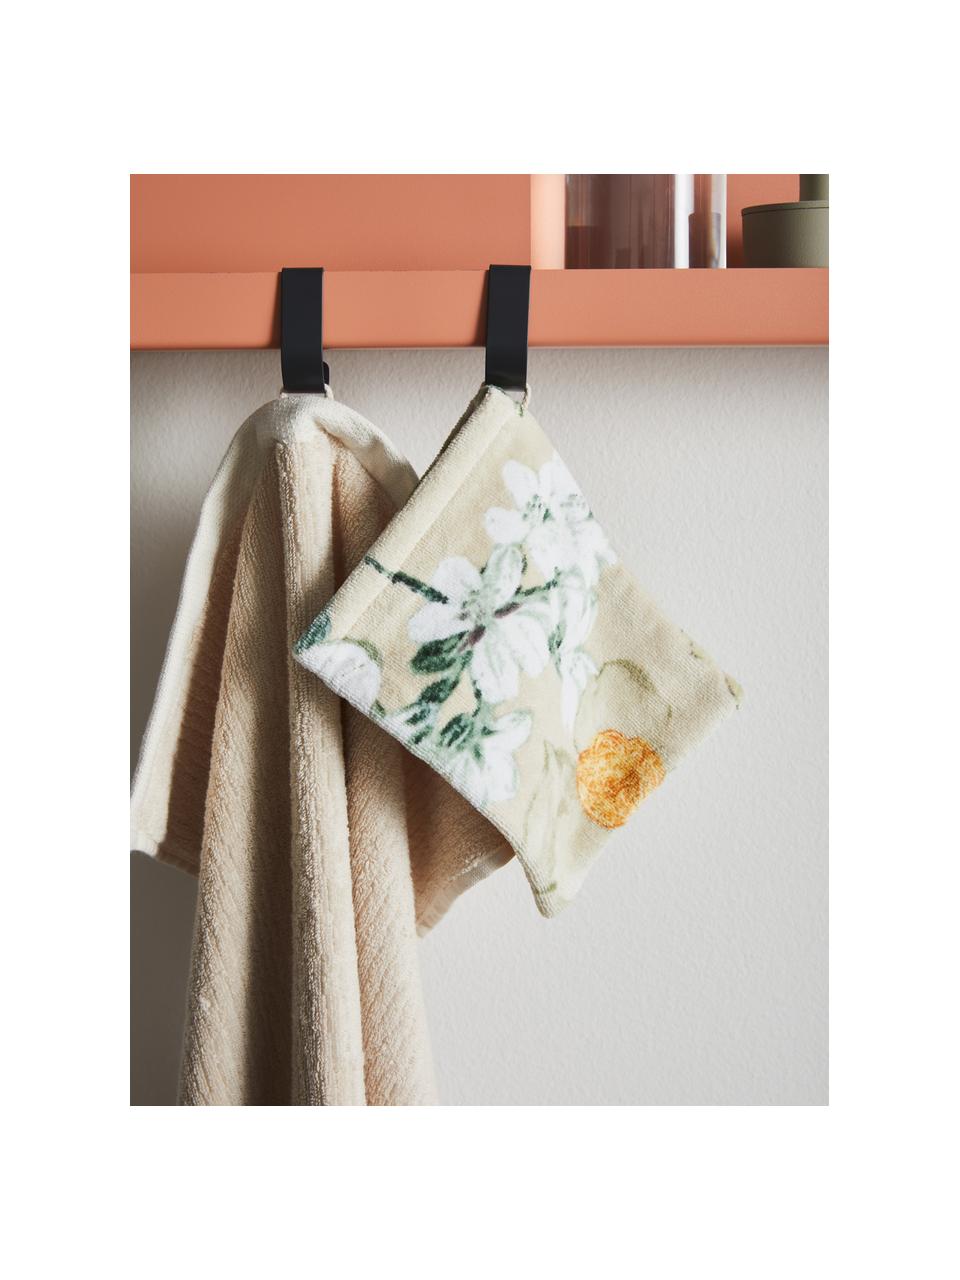 Washandje Rosalee met bloemenpatroon, Katoen, Beige, wit, groen, oranje, 16 x 22 cm